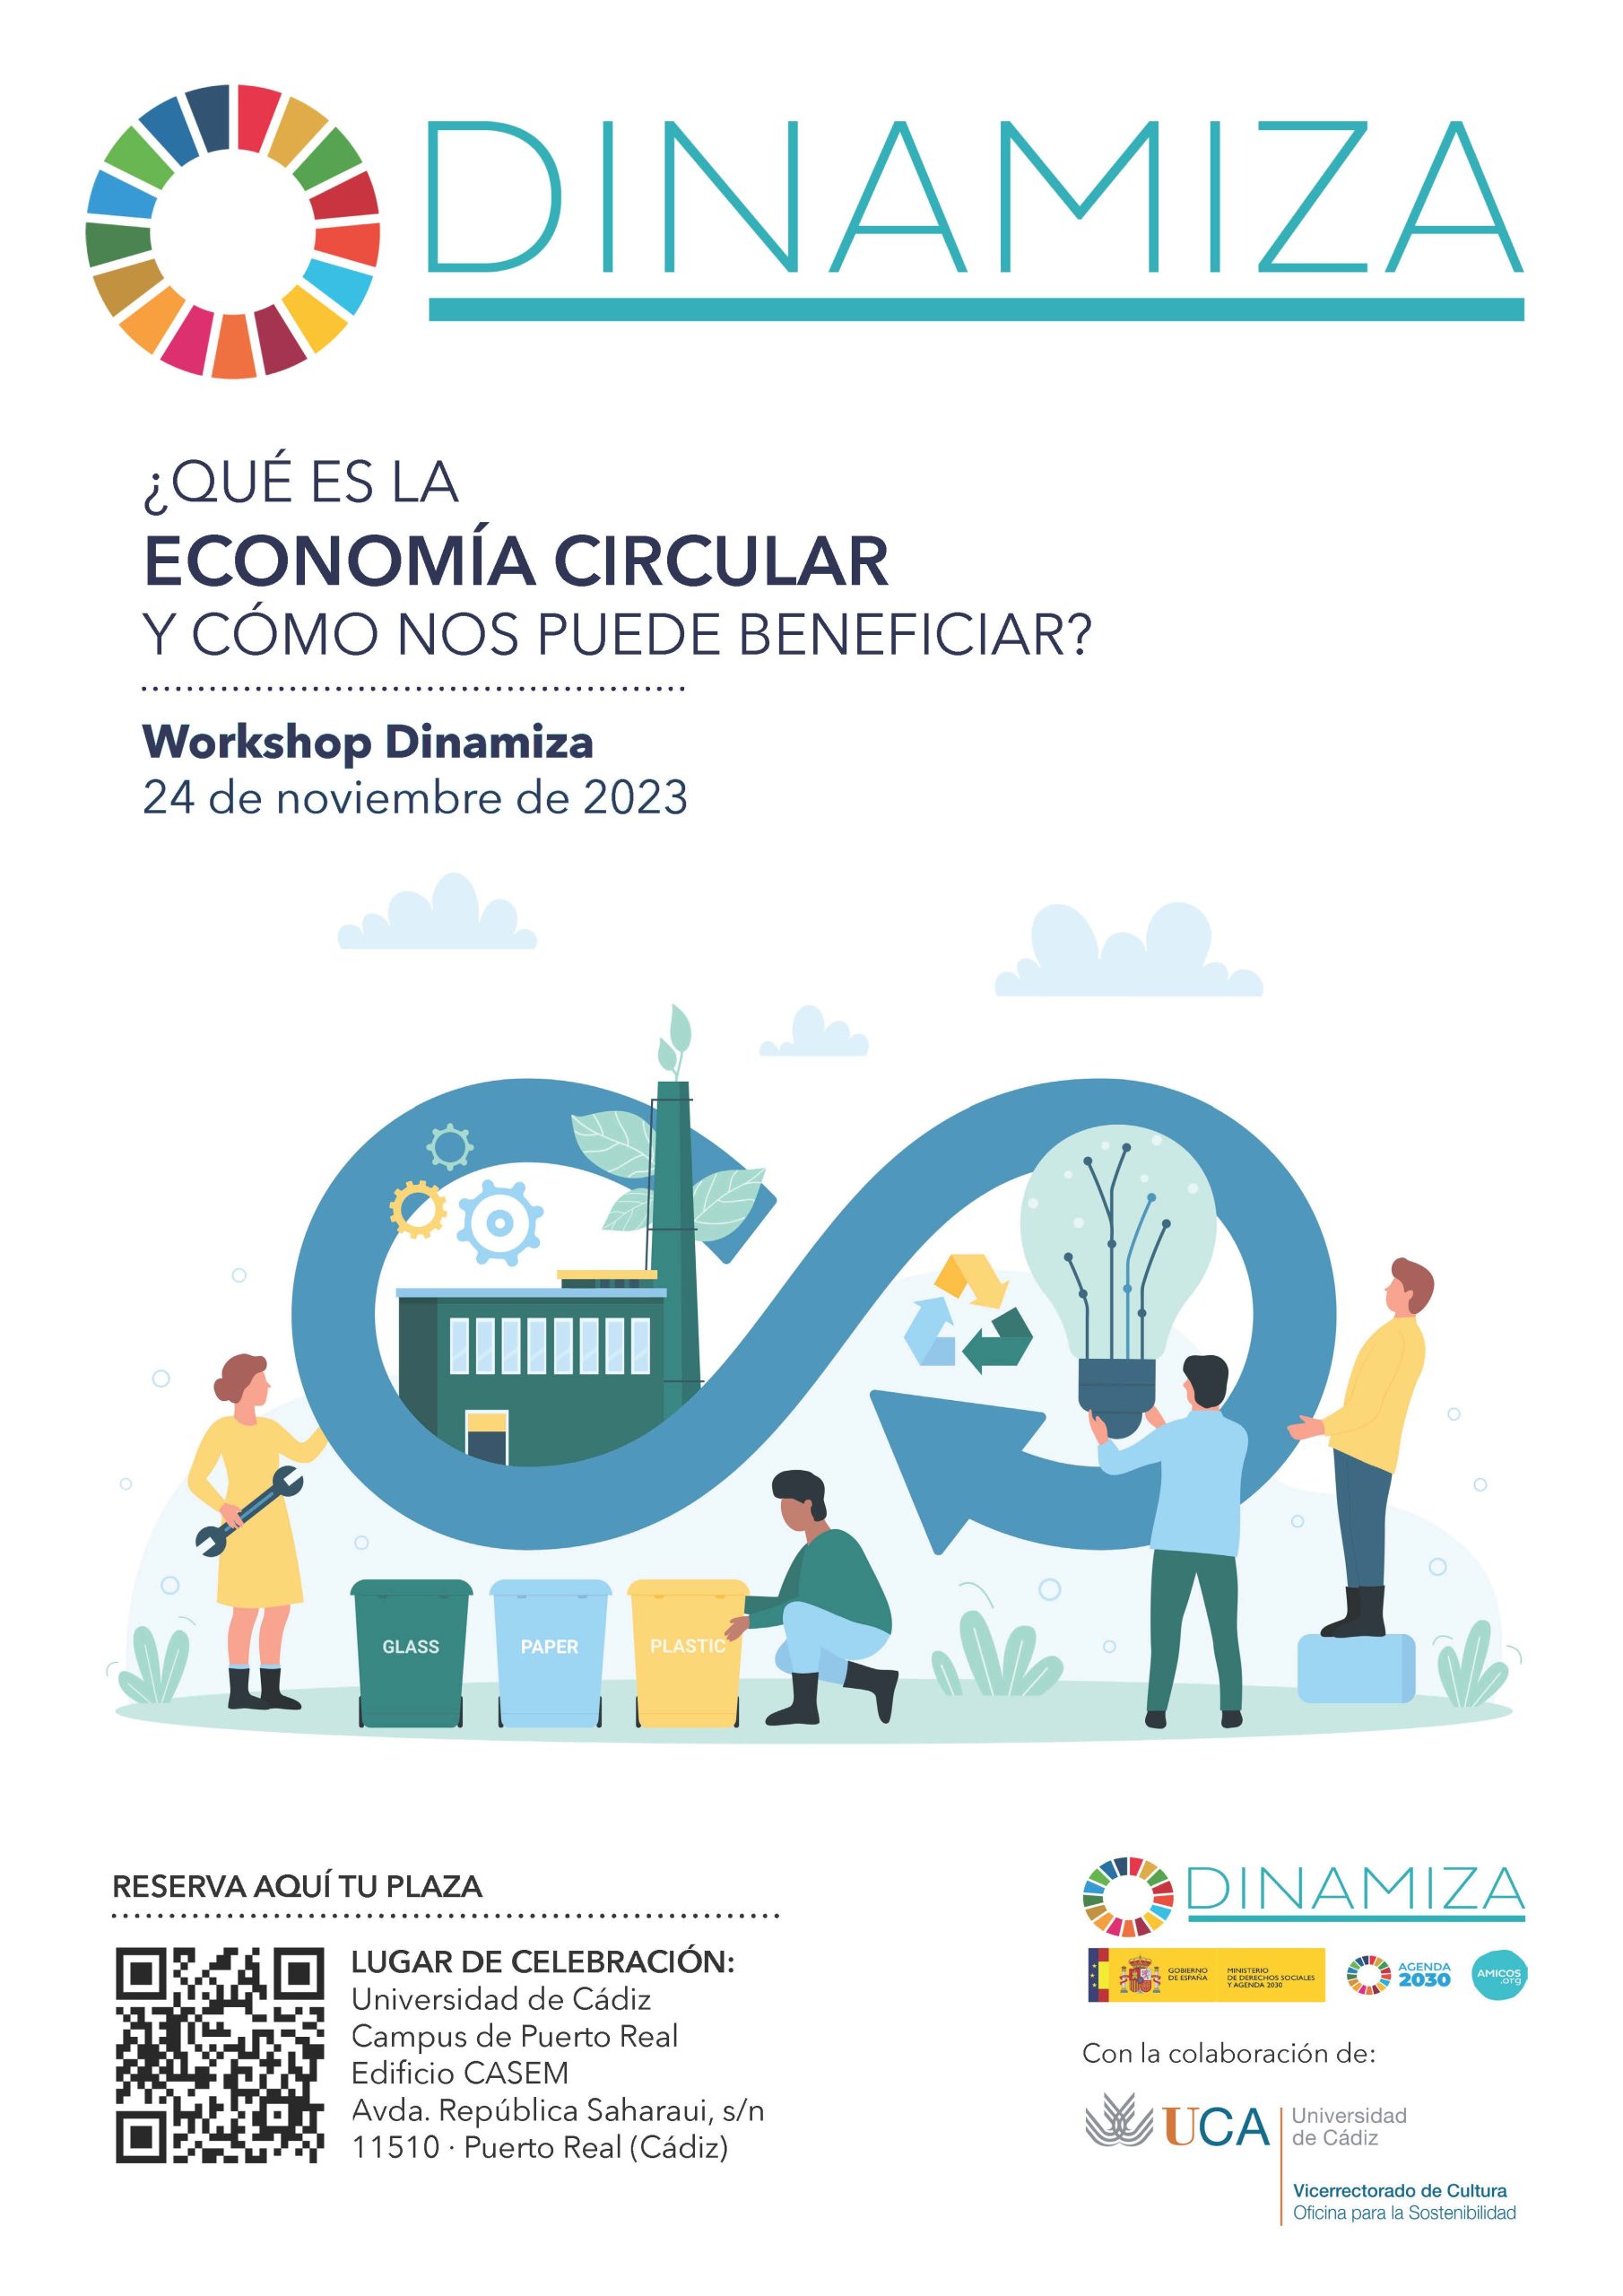 Workshop “¿Qué es la economía circular y cómo nos puede beneficiar?